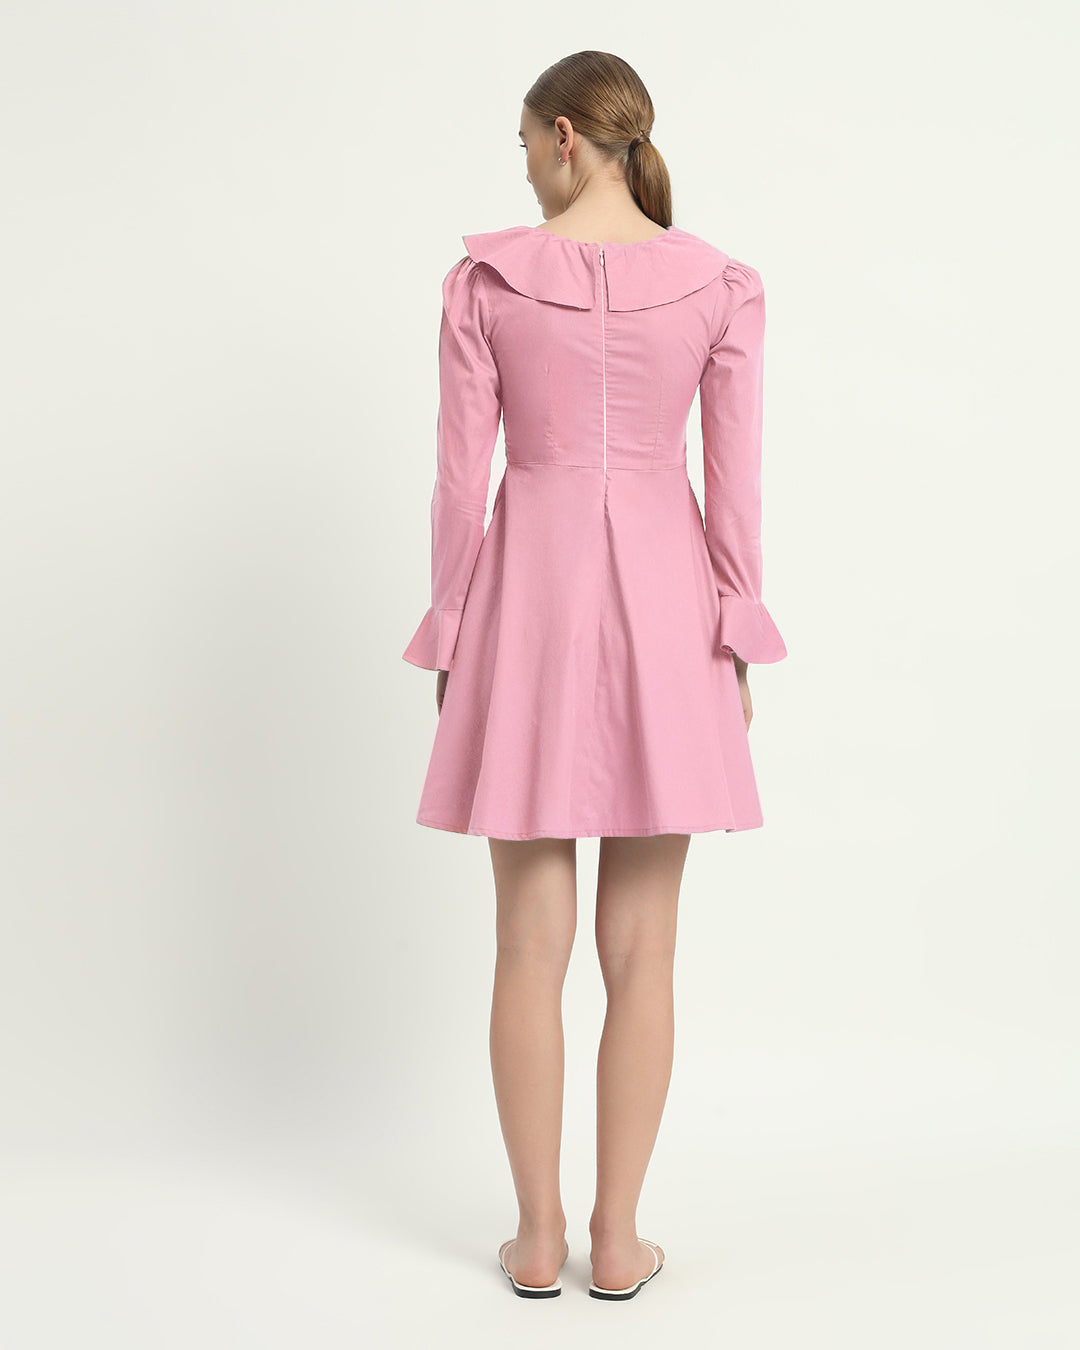 The Fredonia Fondant Pink Cotton Dress